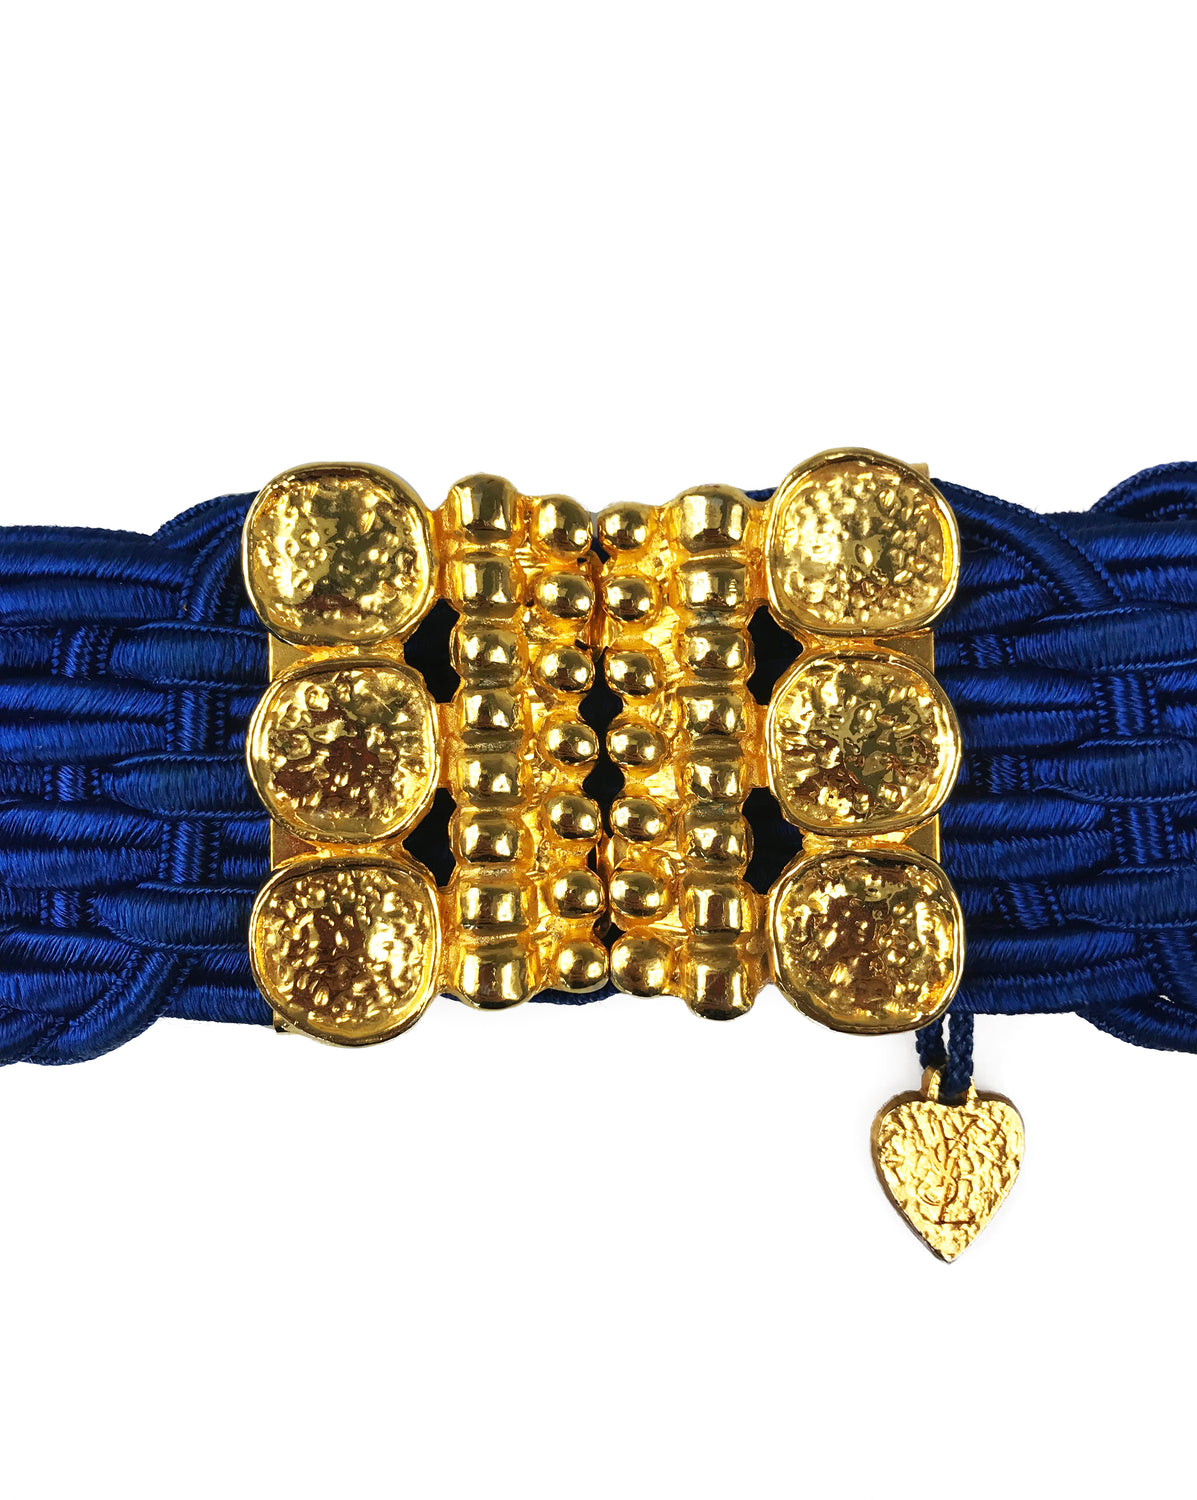 Yves Saint Laurent Blue Elastic Belt Belt